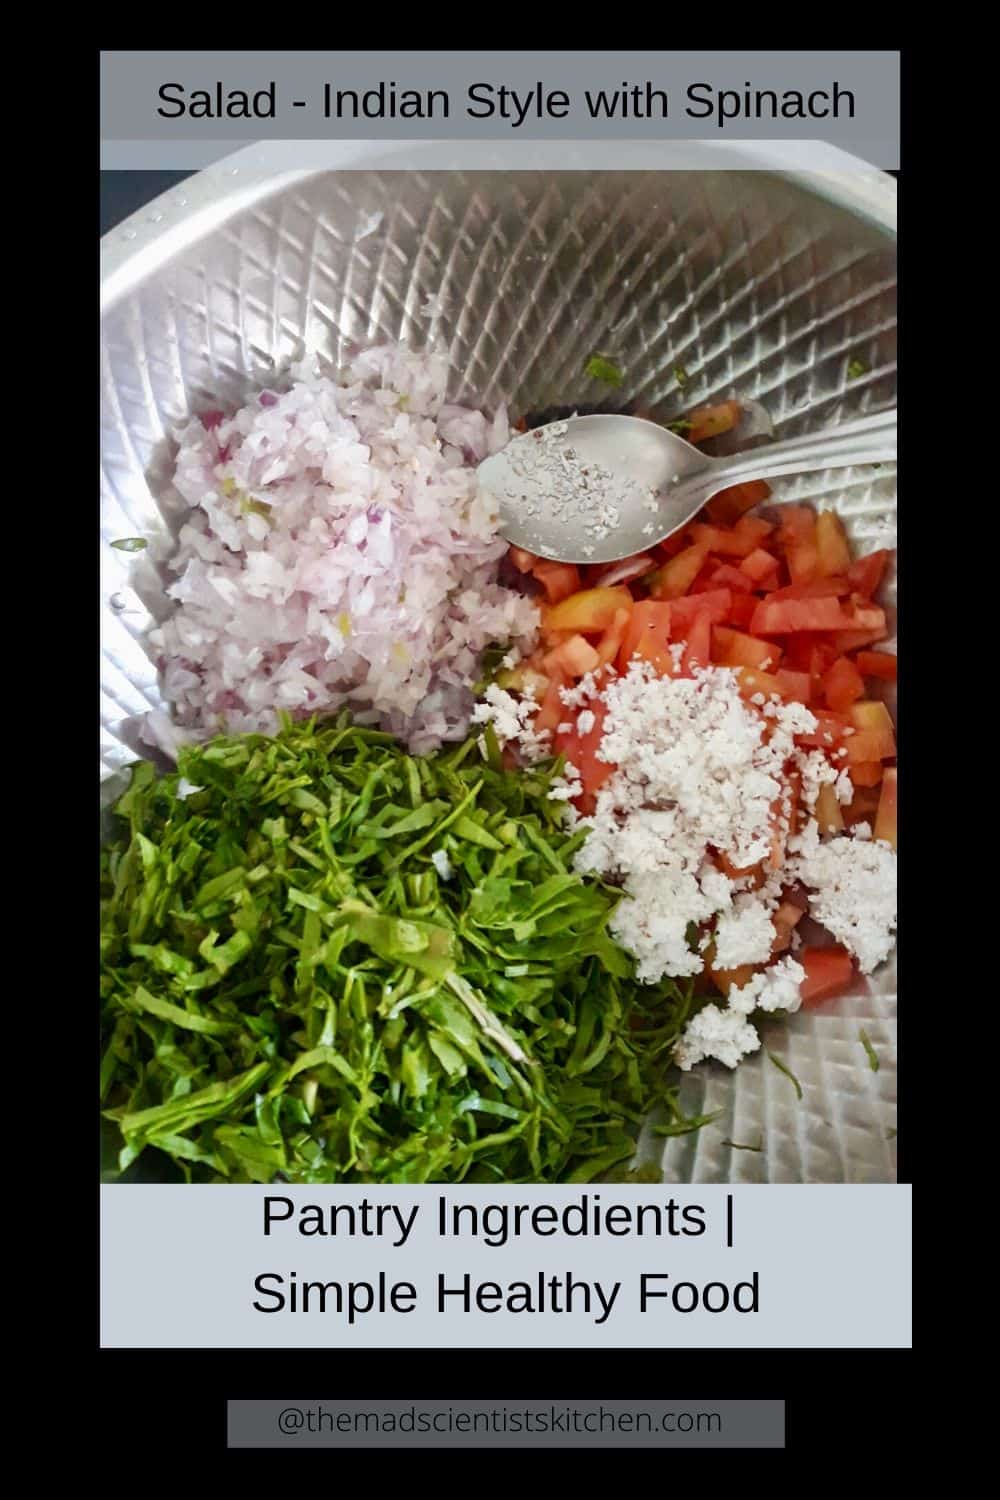 The making of Palak salad